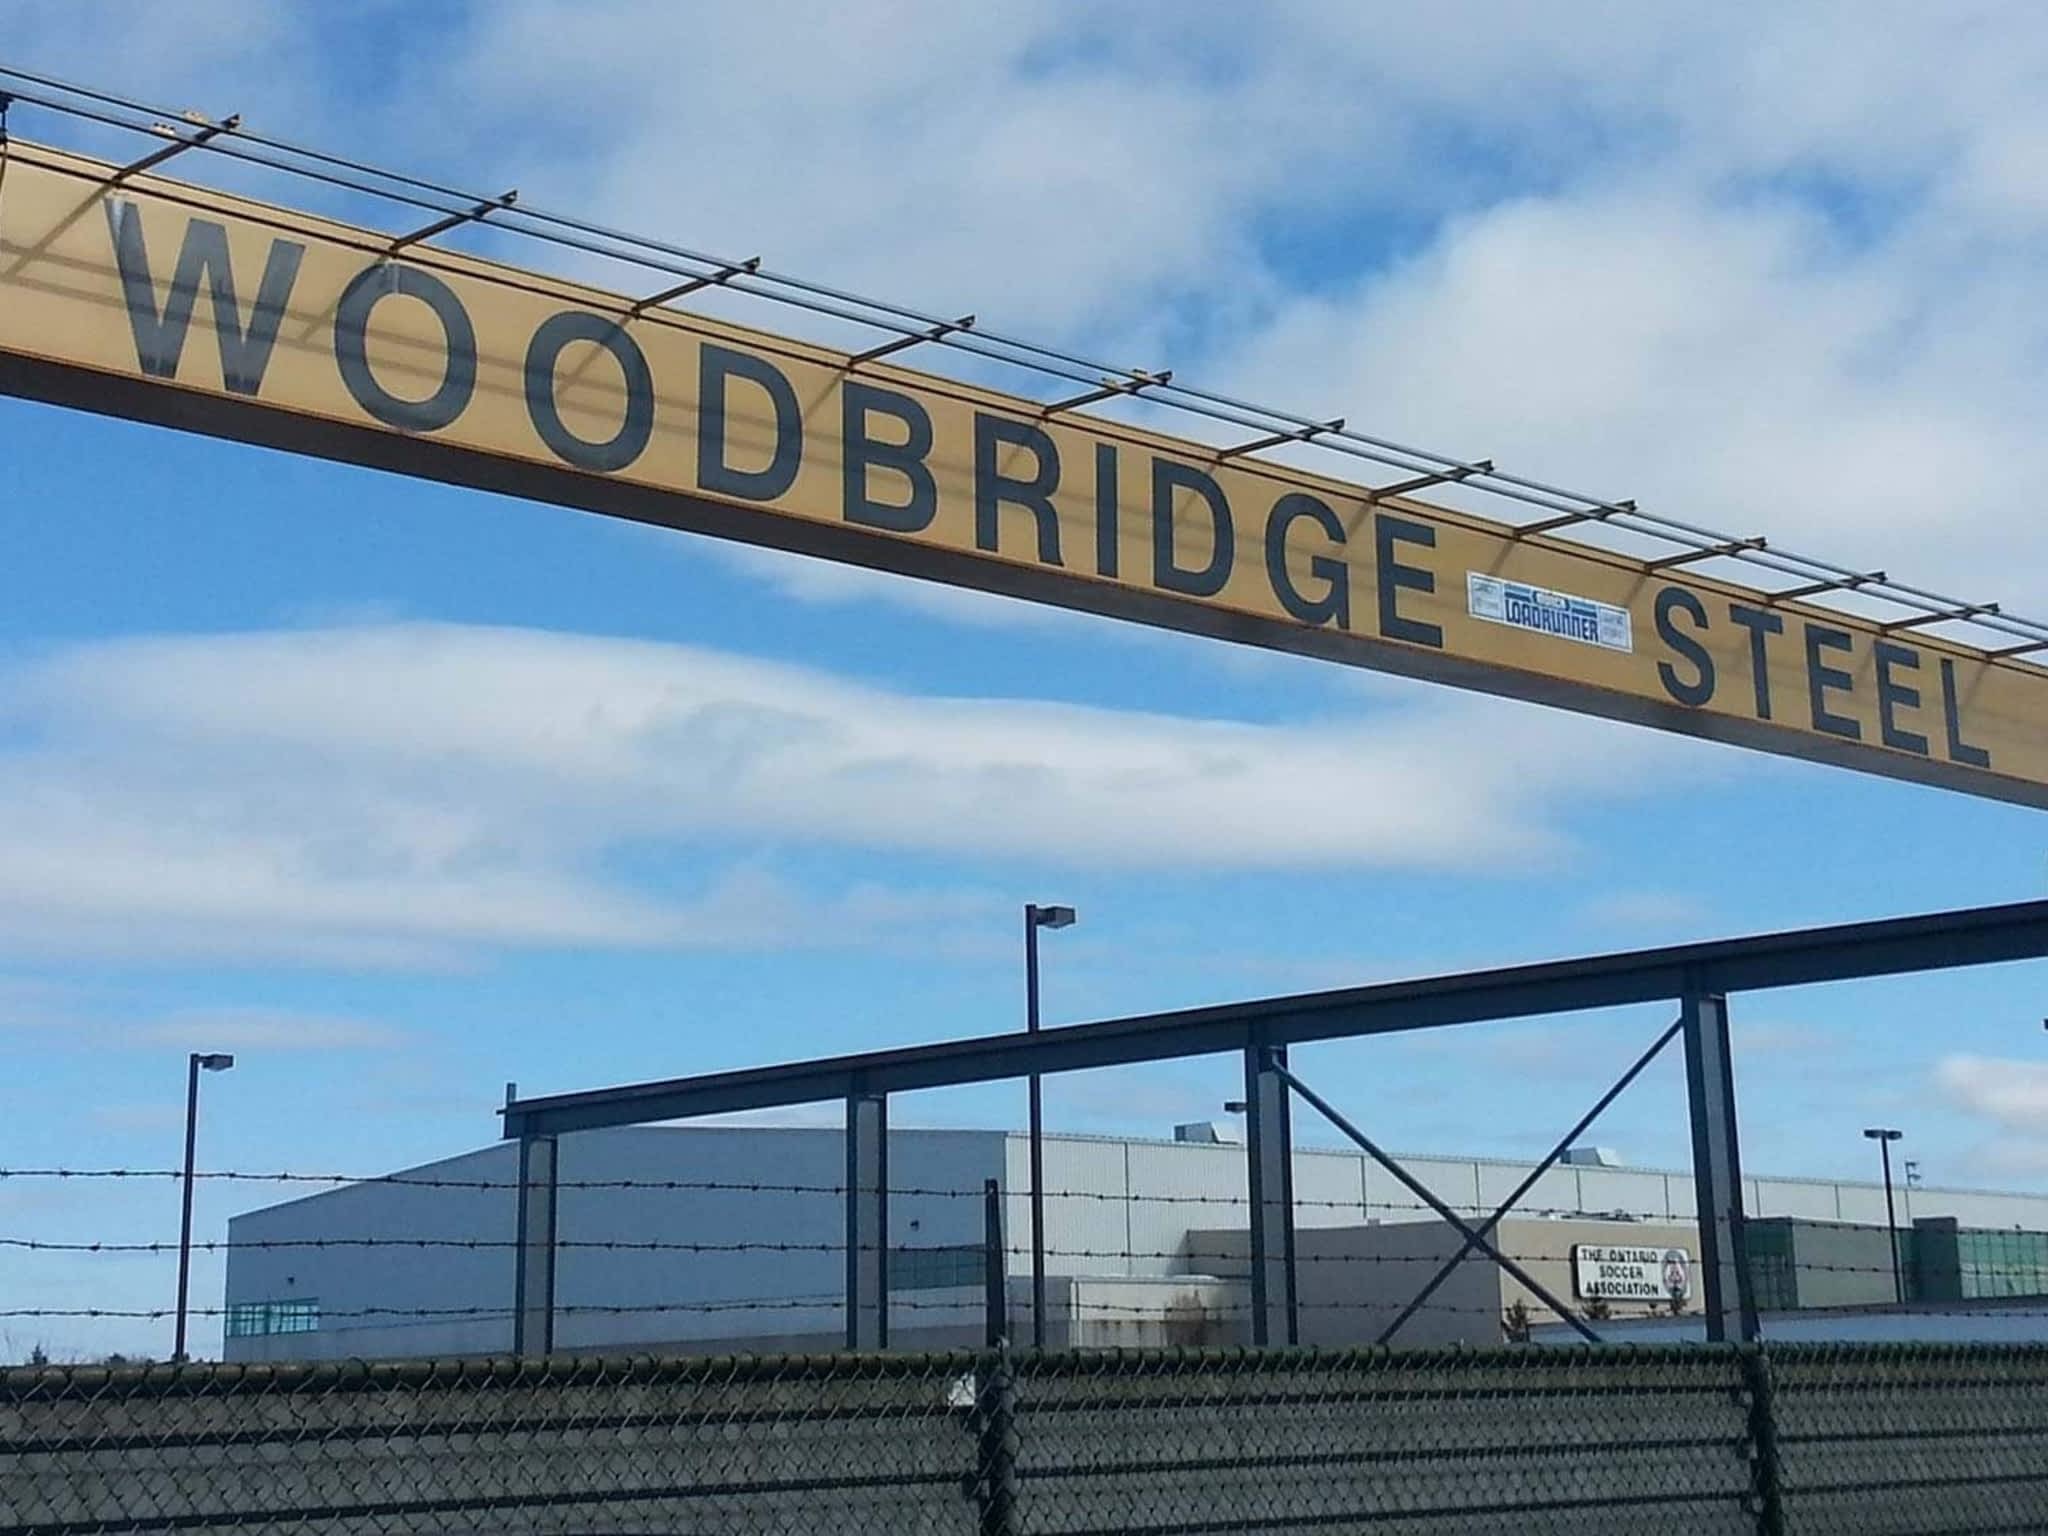 photo Woodbridge steel limited